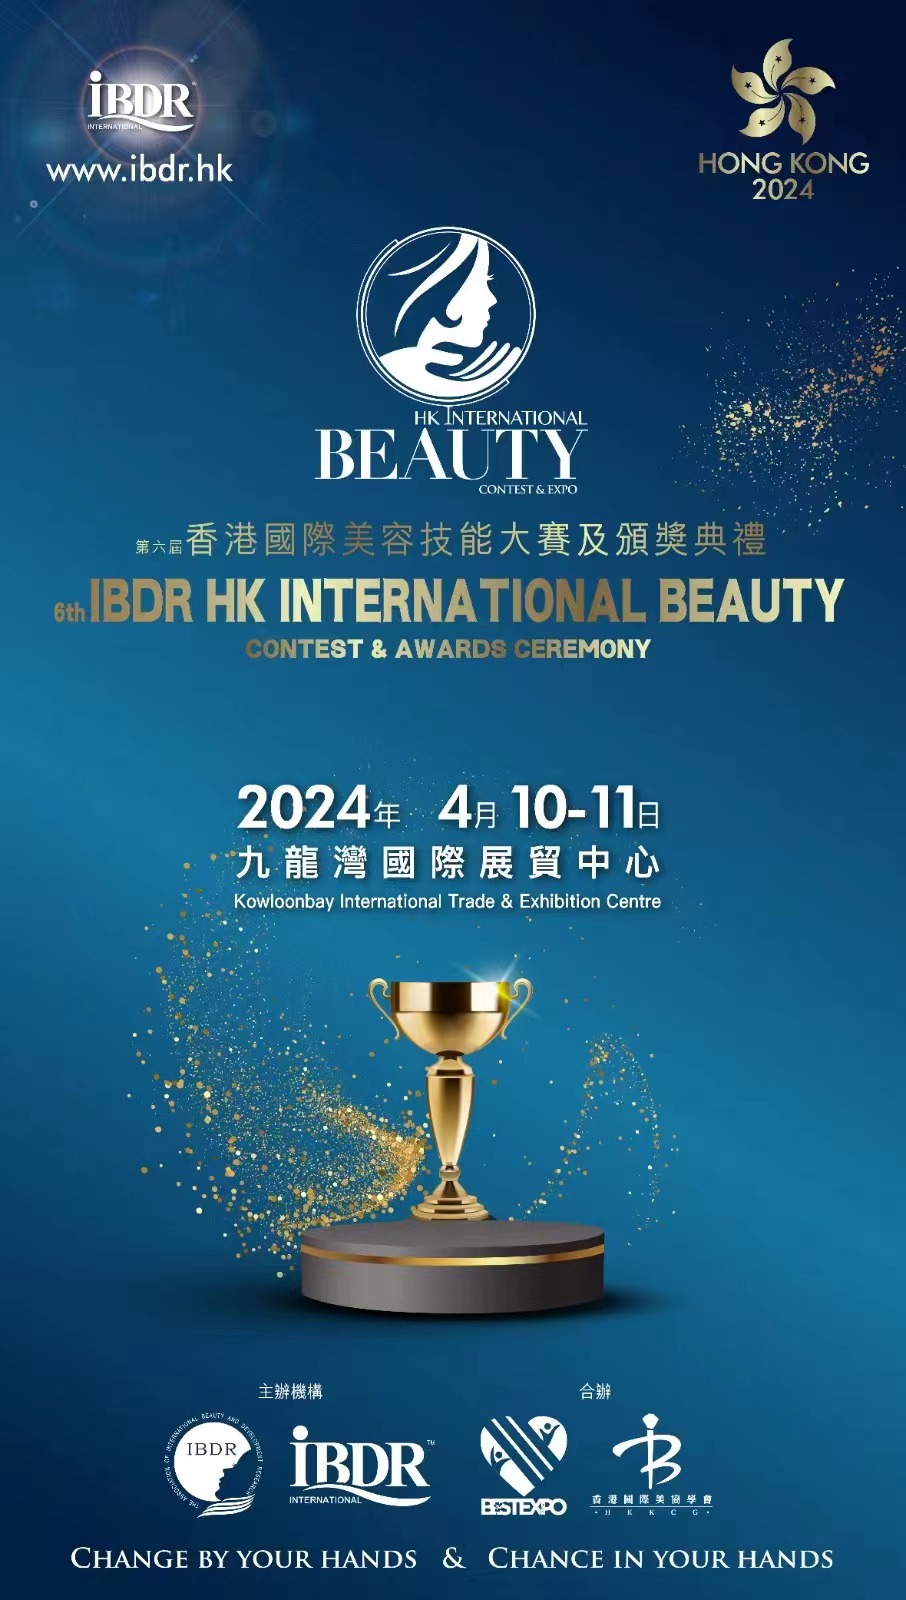 2023年IBDR济州国际美容技能大赛